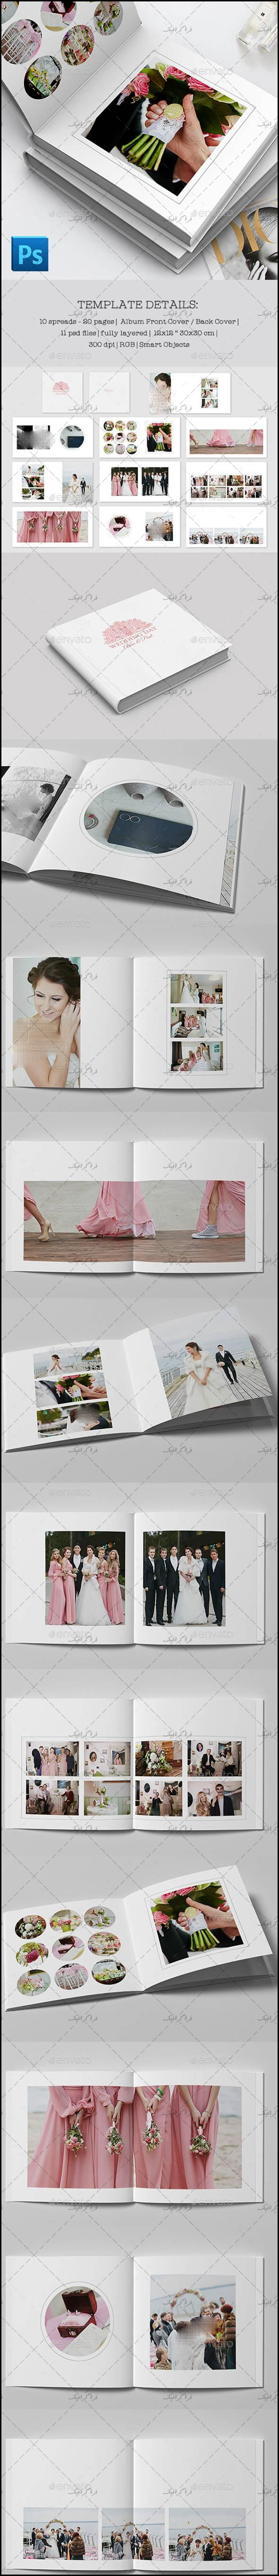 دانلود فایل لایه باز فتوشاپ آلبوم عکس عروسی - شماره 2